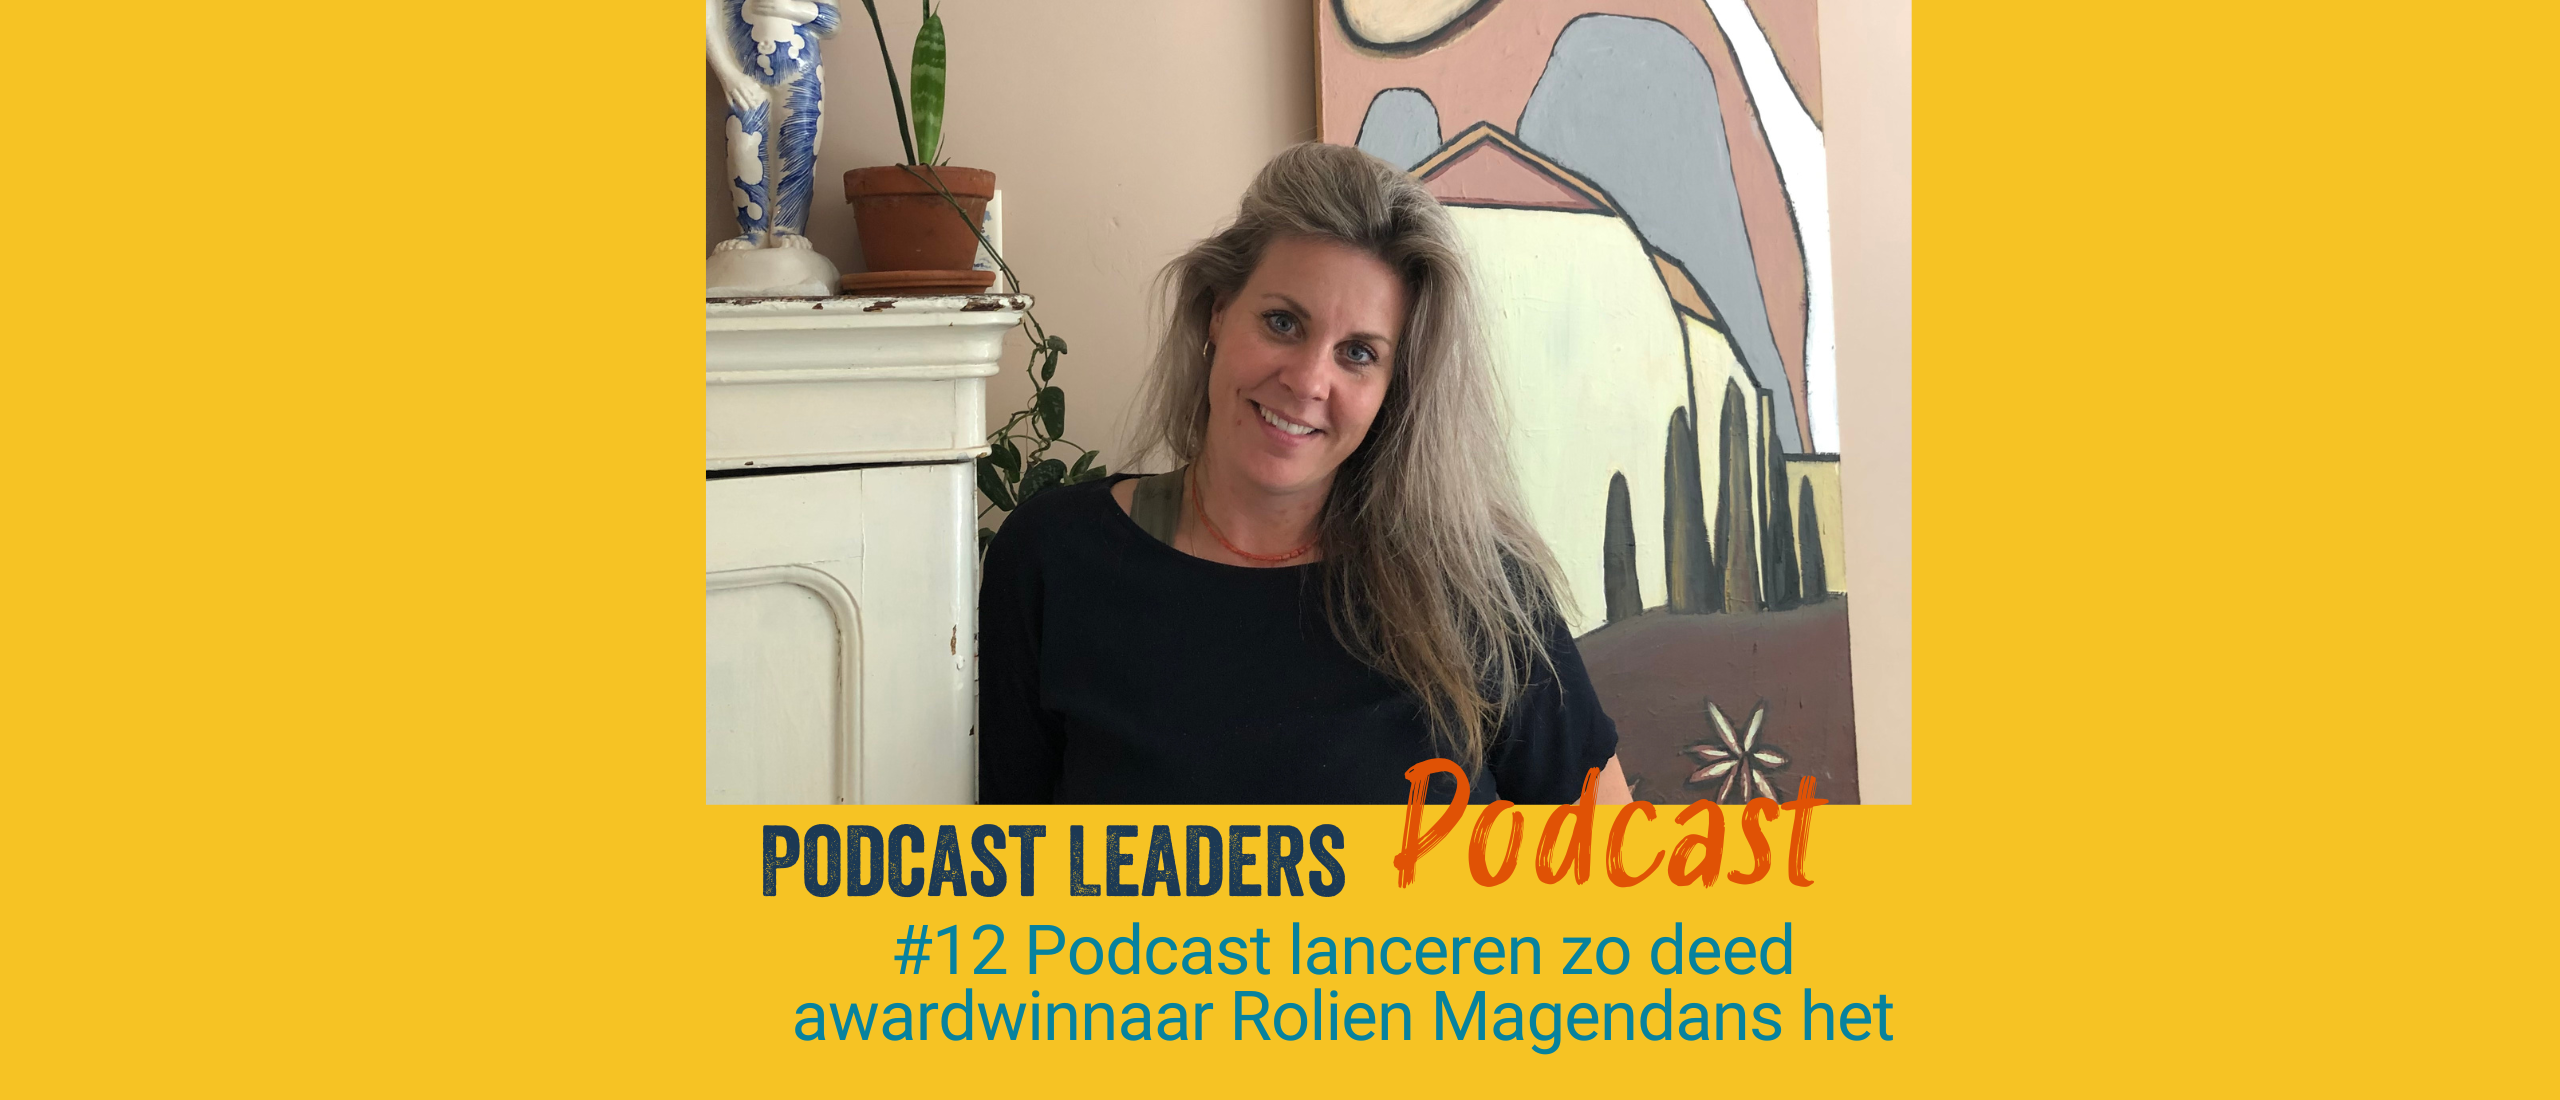 EP12 Hoe Dutch Podcast Award winnaar Rolien Magendans haar Podcast lanceerde